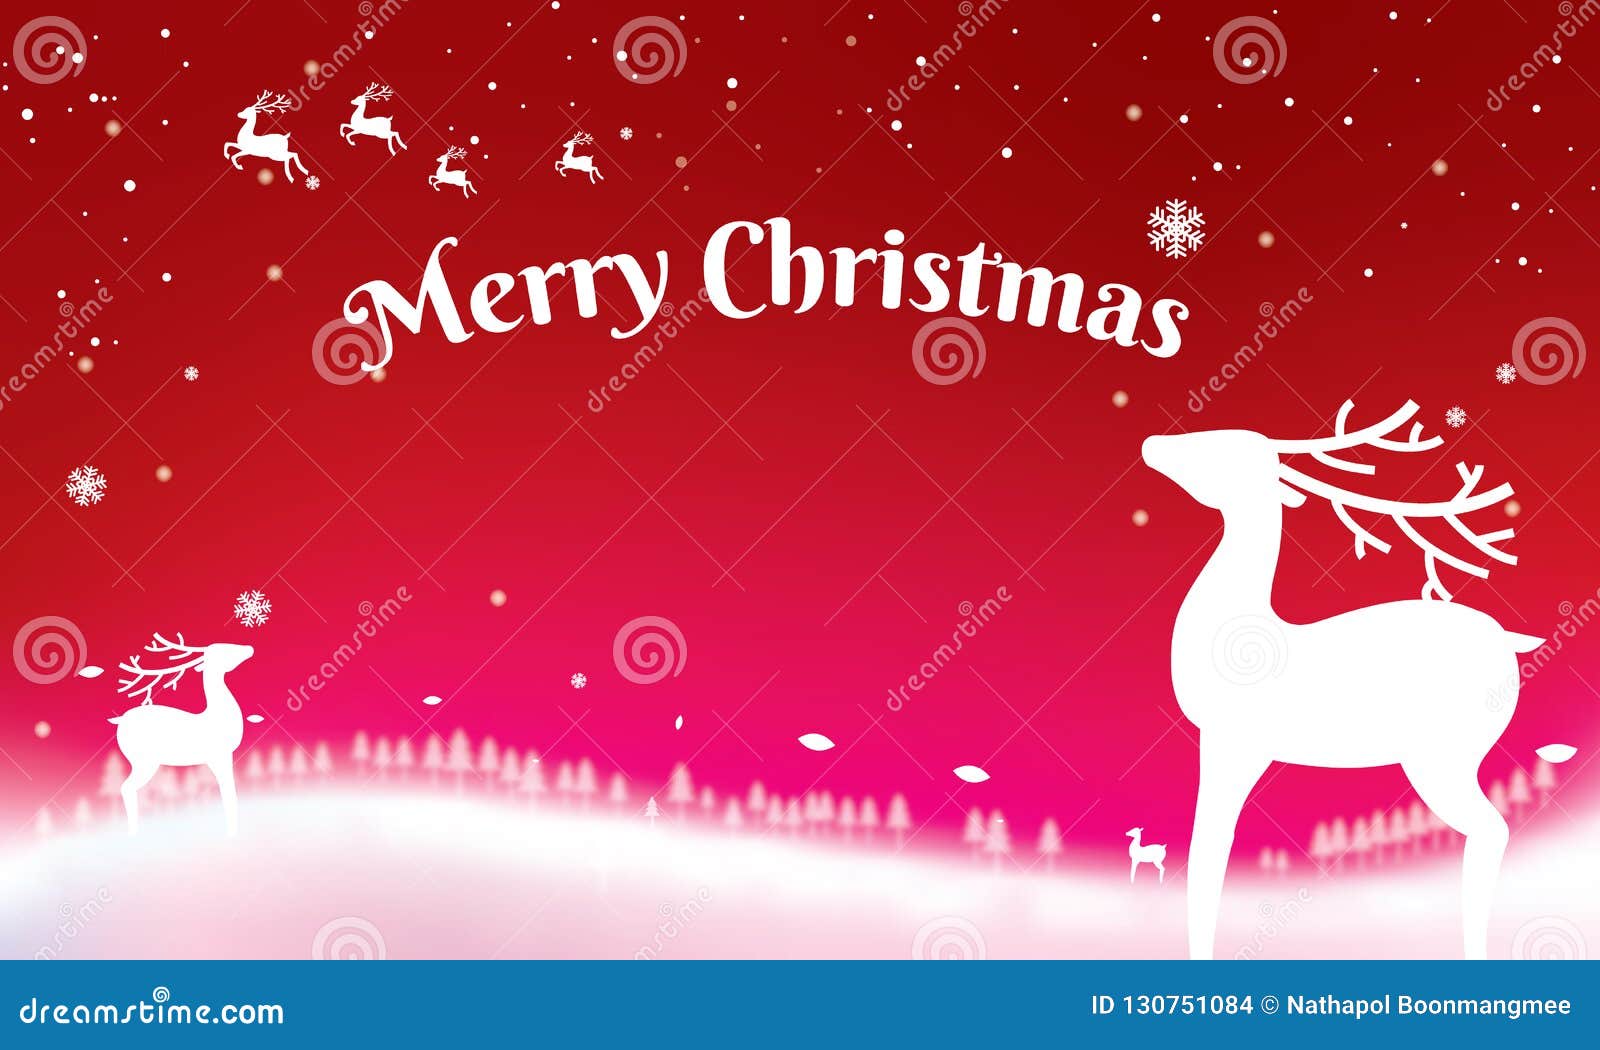 圣诞节印刷在与冬天lan的发光的xmas背景向量例证 插画包括有圣诞节印刷在与冬天lan的发光的xmas背景